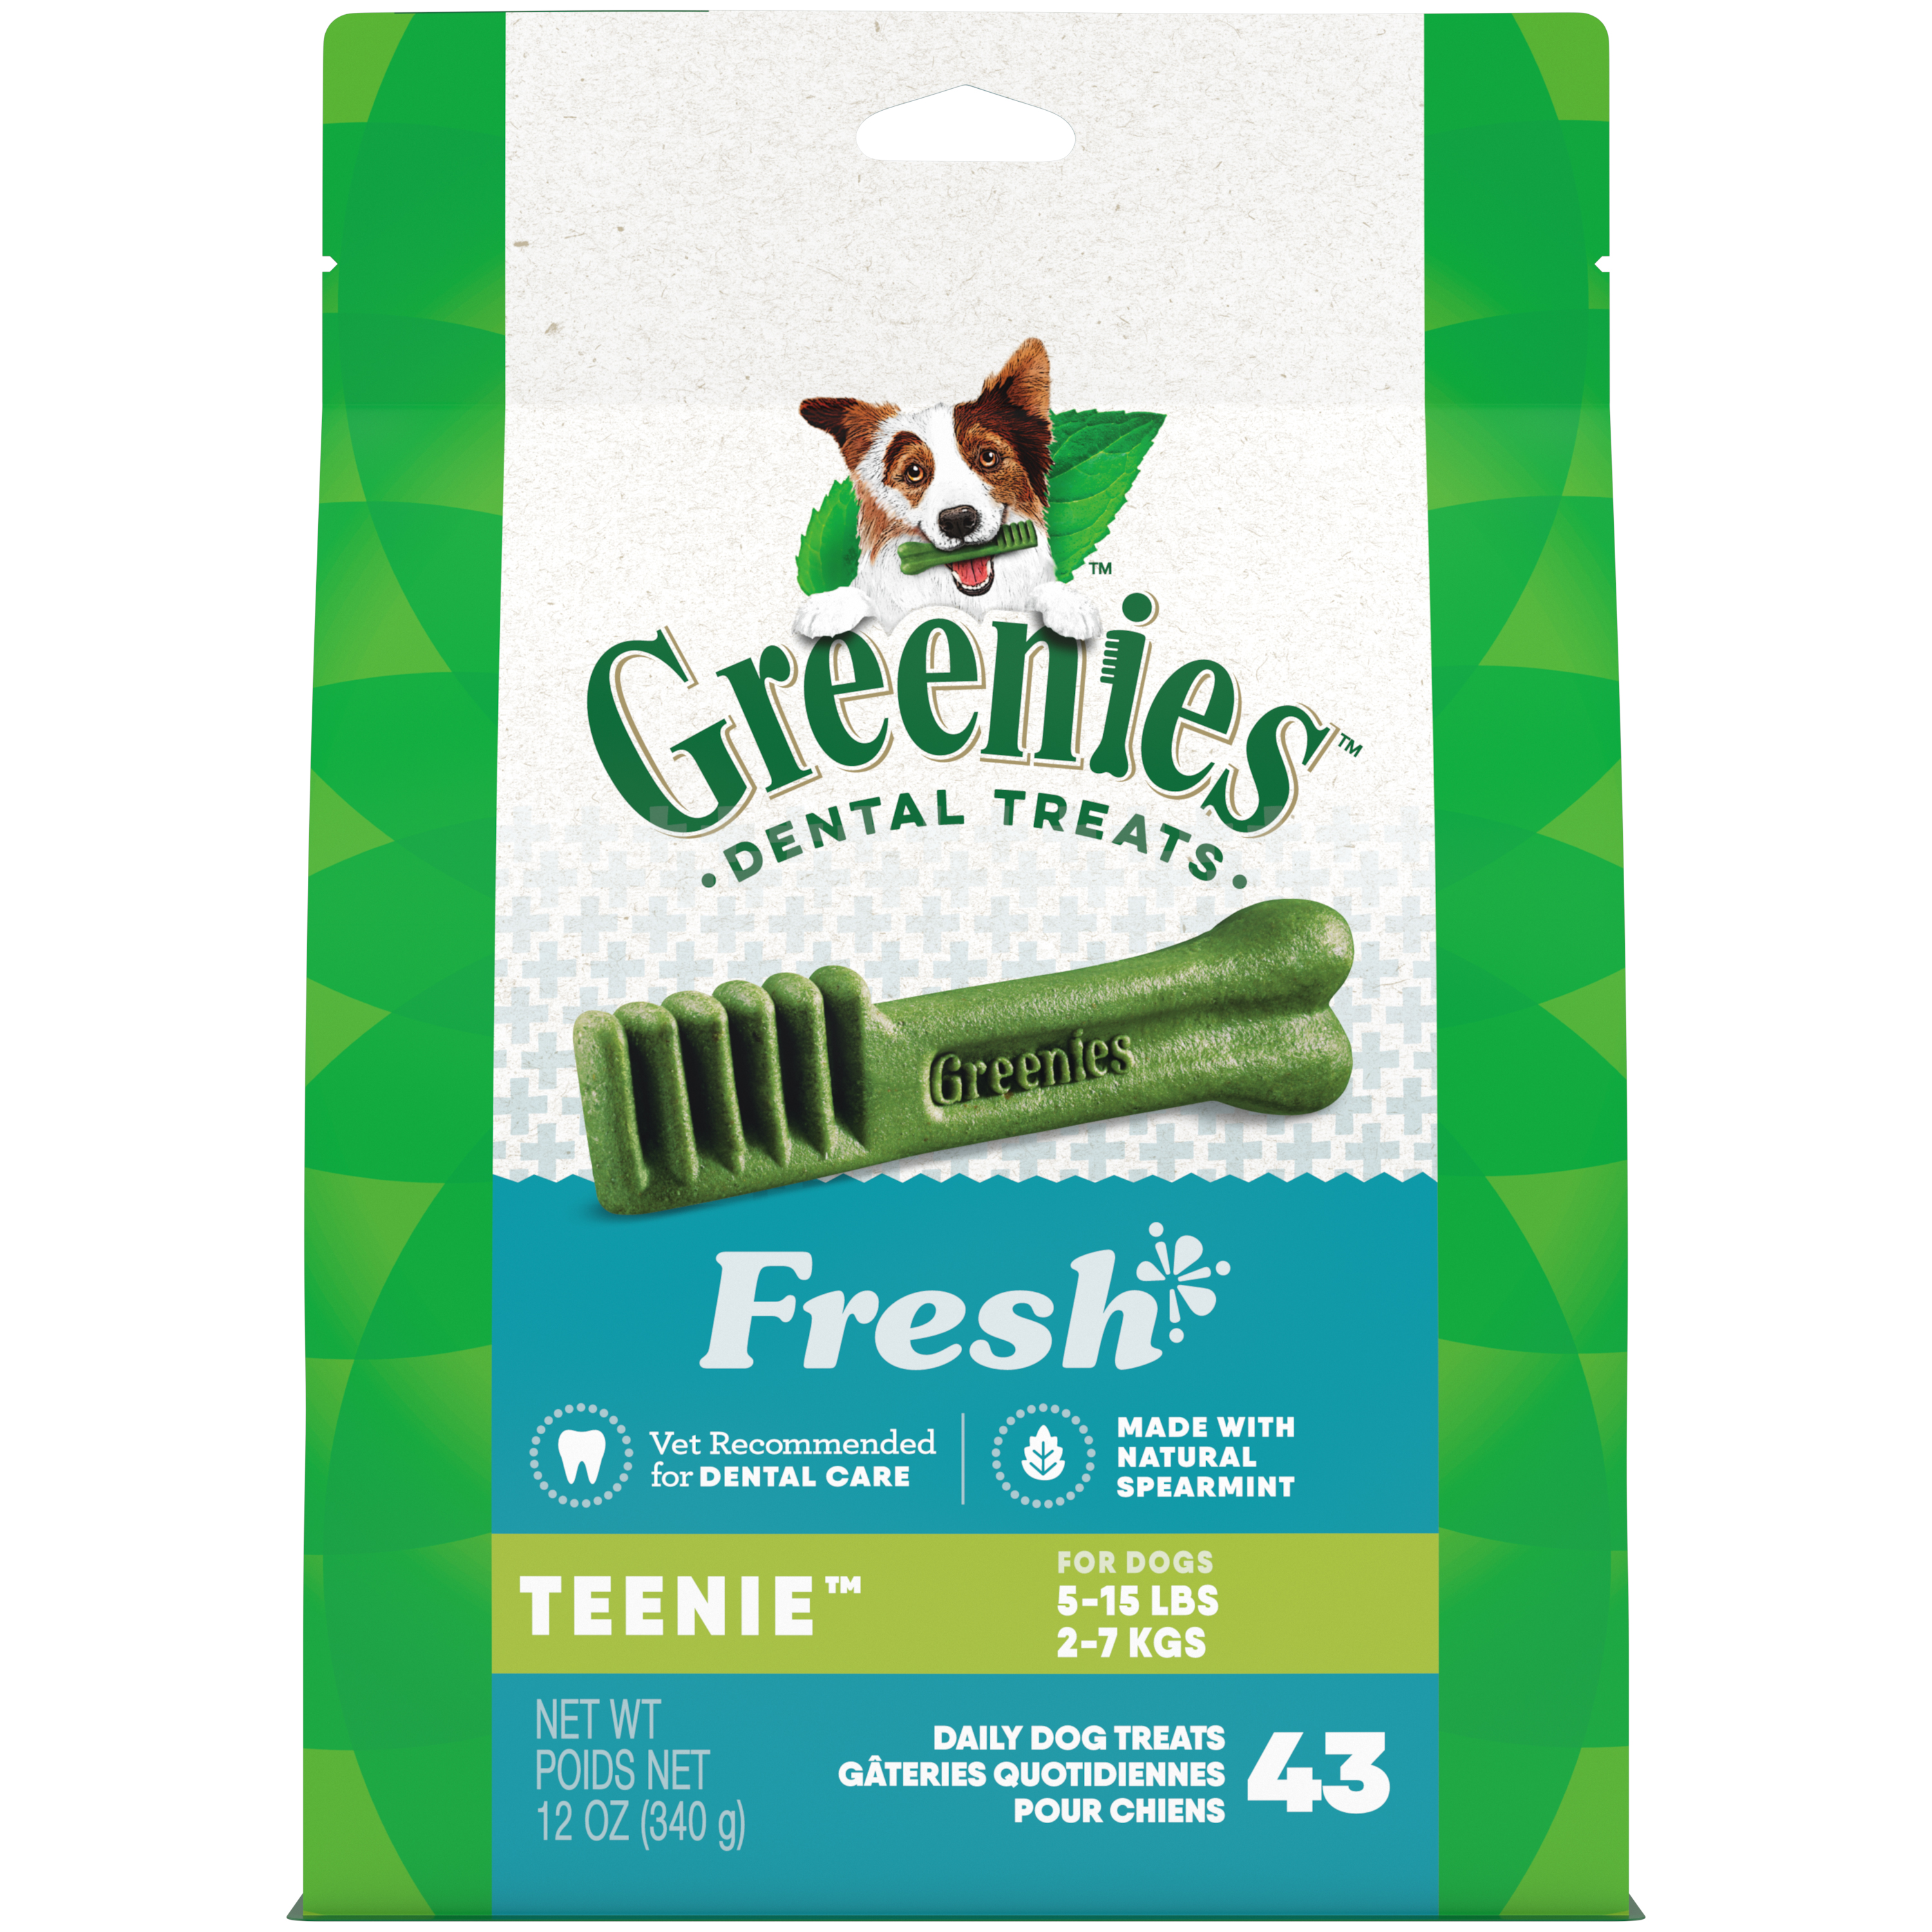 12 oz. Greenies Teenie Fresh Treat Pack - Treats